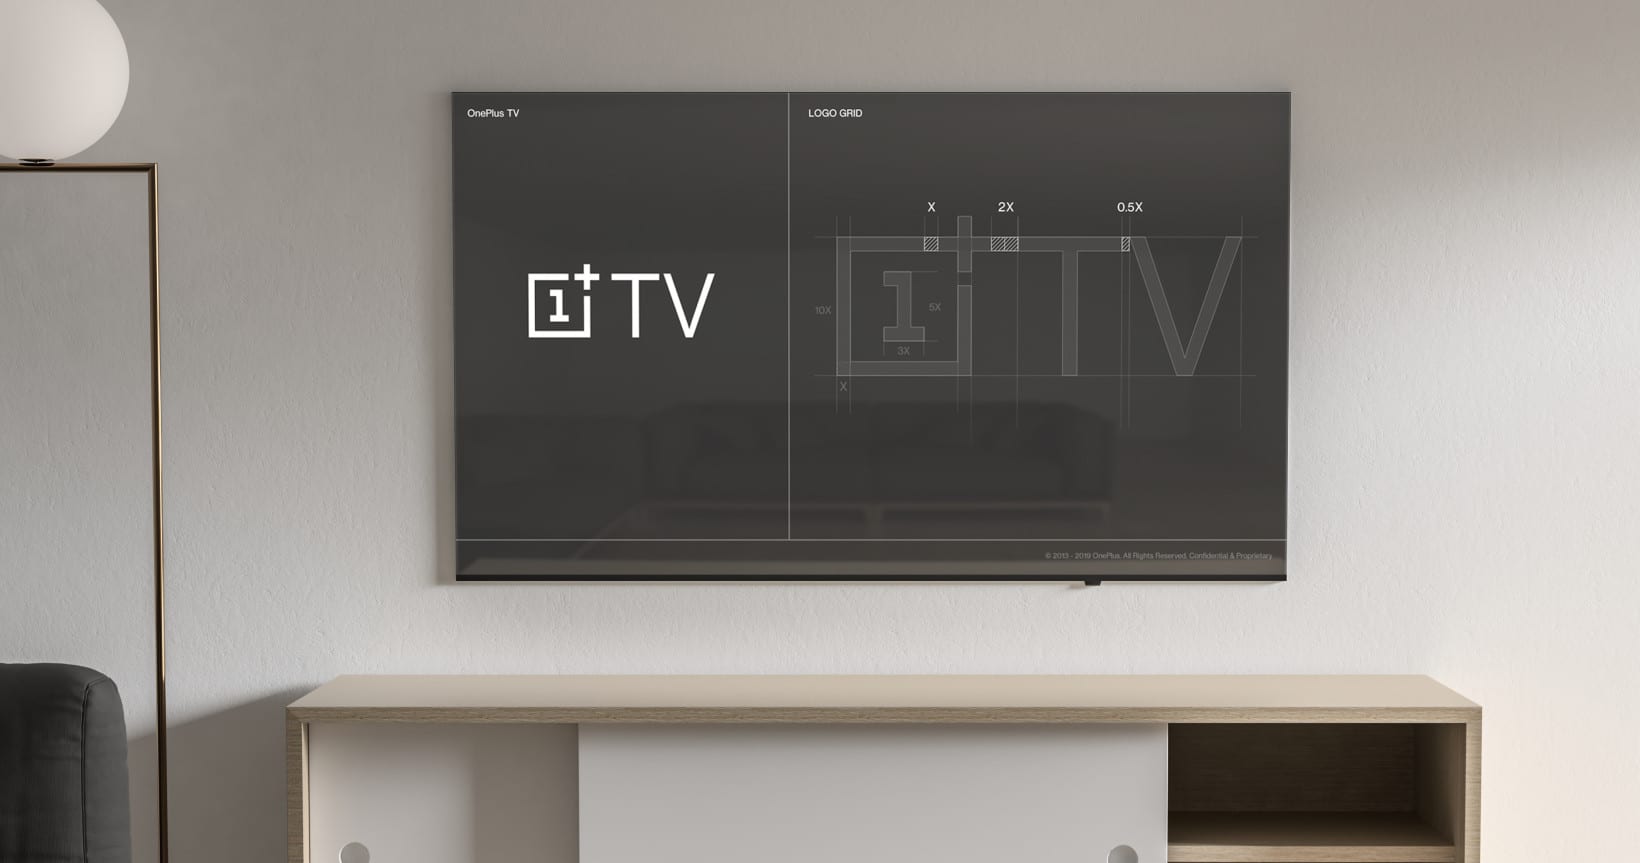 ون بلس تؤكد إطلاقها التلفاز الذكي OnePlus TV